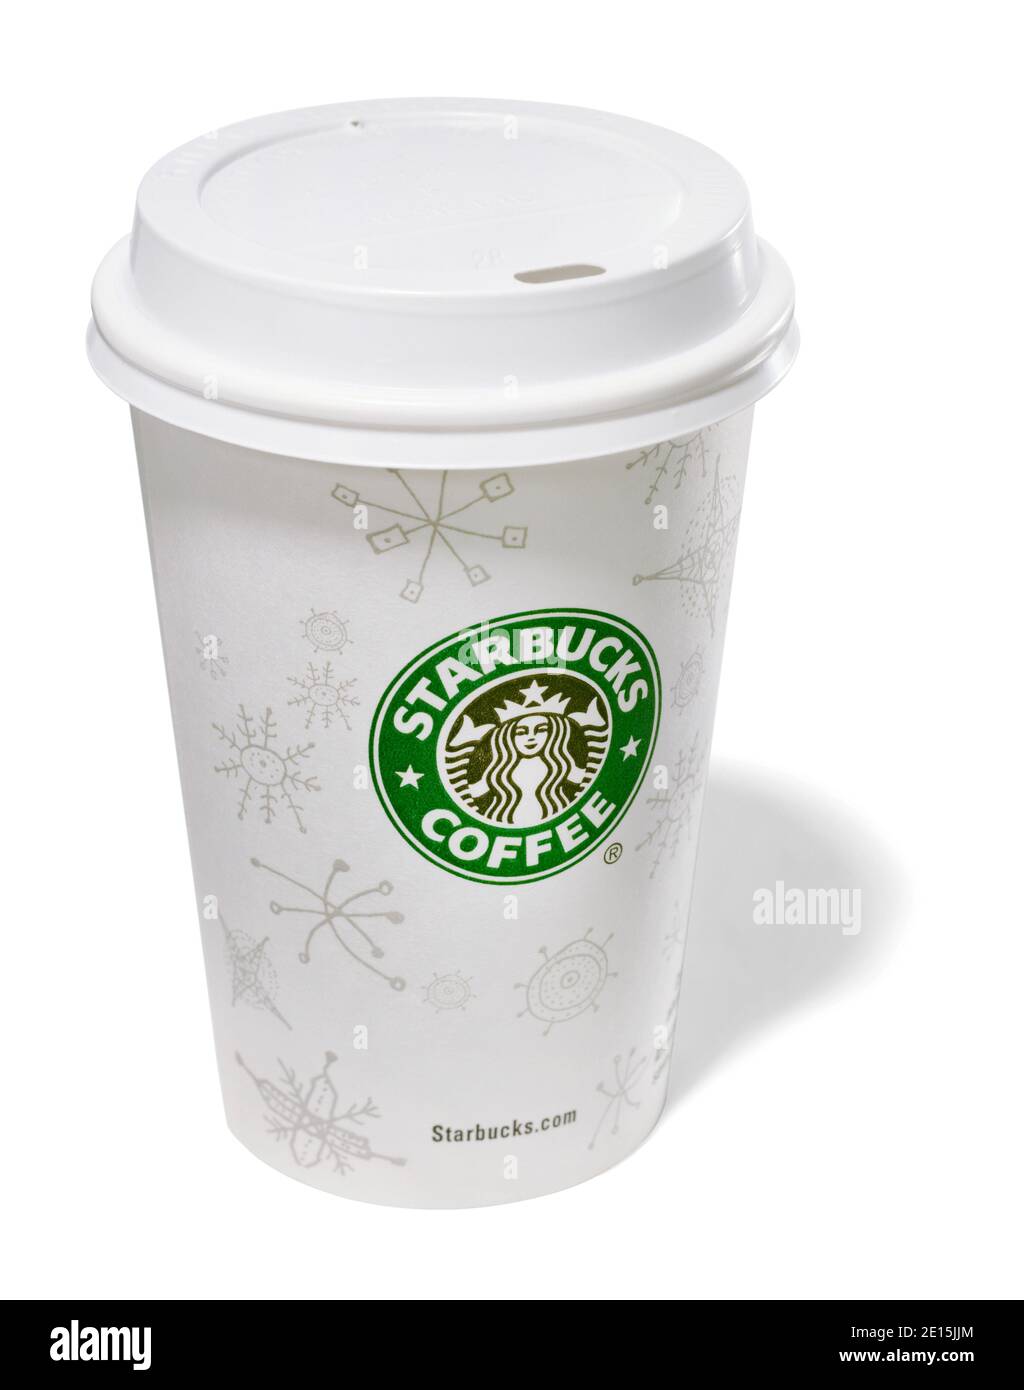 Tazza da caffè Starbucks bianca per le festività con coperchio fotografato  su un sfondo bianco Foto stock - Alamy